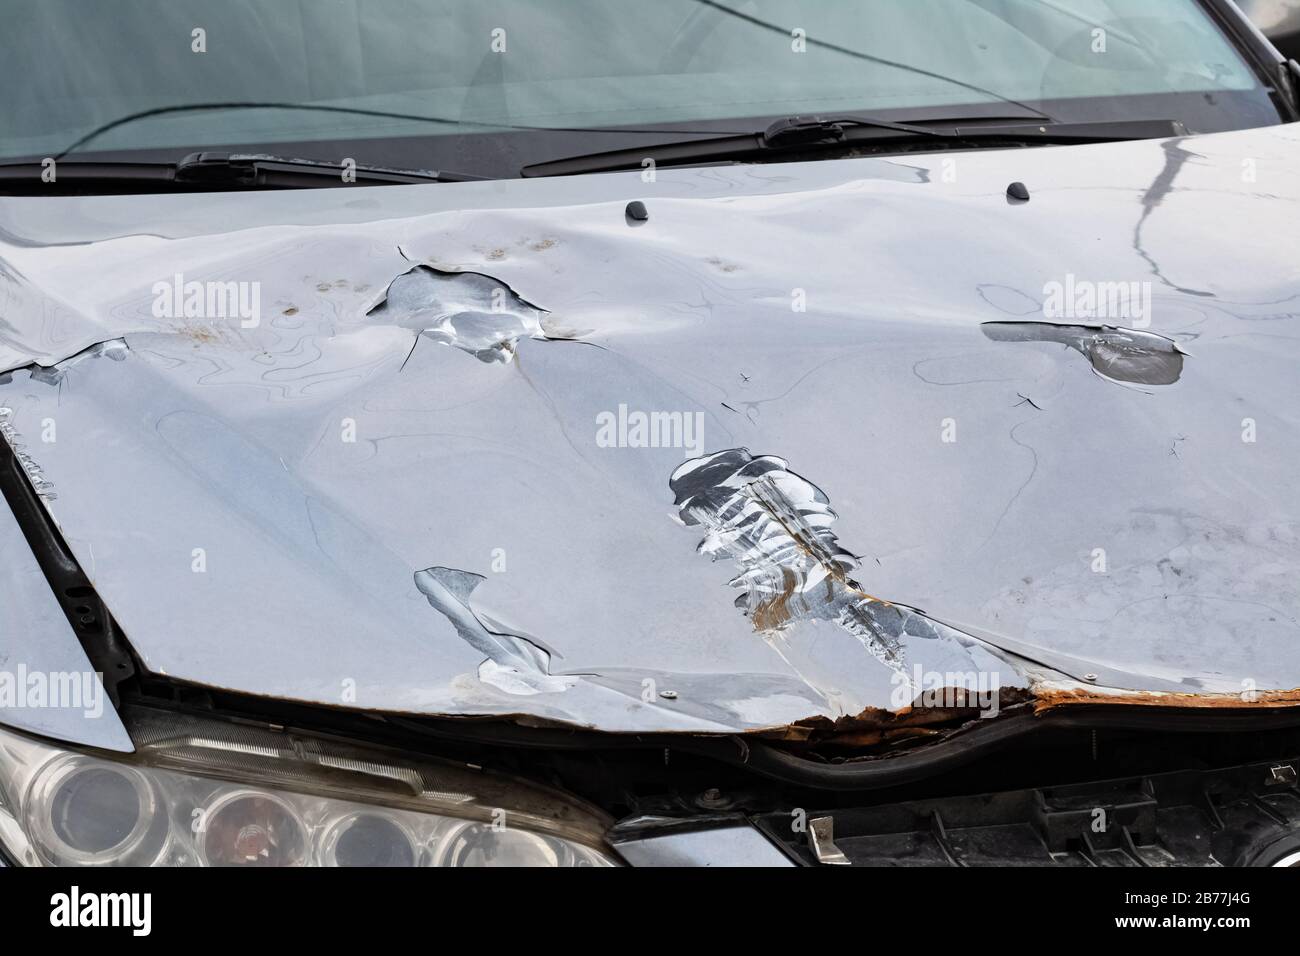 Capot cassé d'une voiture grise se rapproche Photo Stock - Alamy